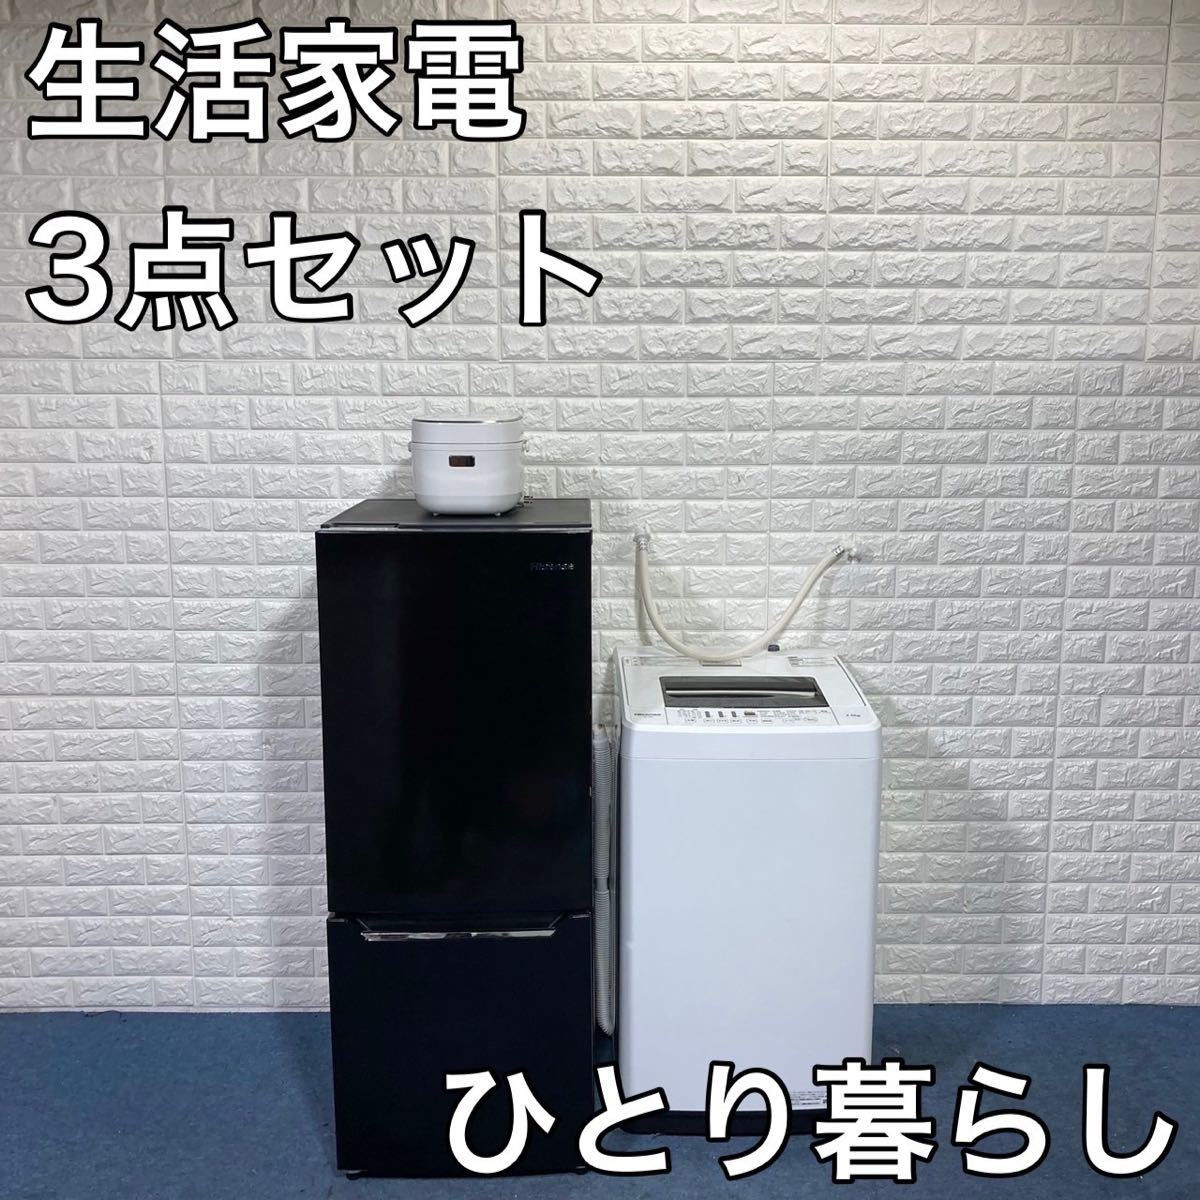 生活家電 3点セット 冷蔵庫 洗濯機 炊飯器 ひとり暮らし 家電 A880 www